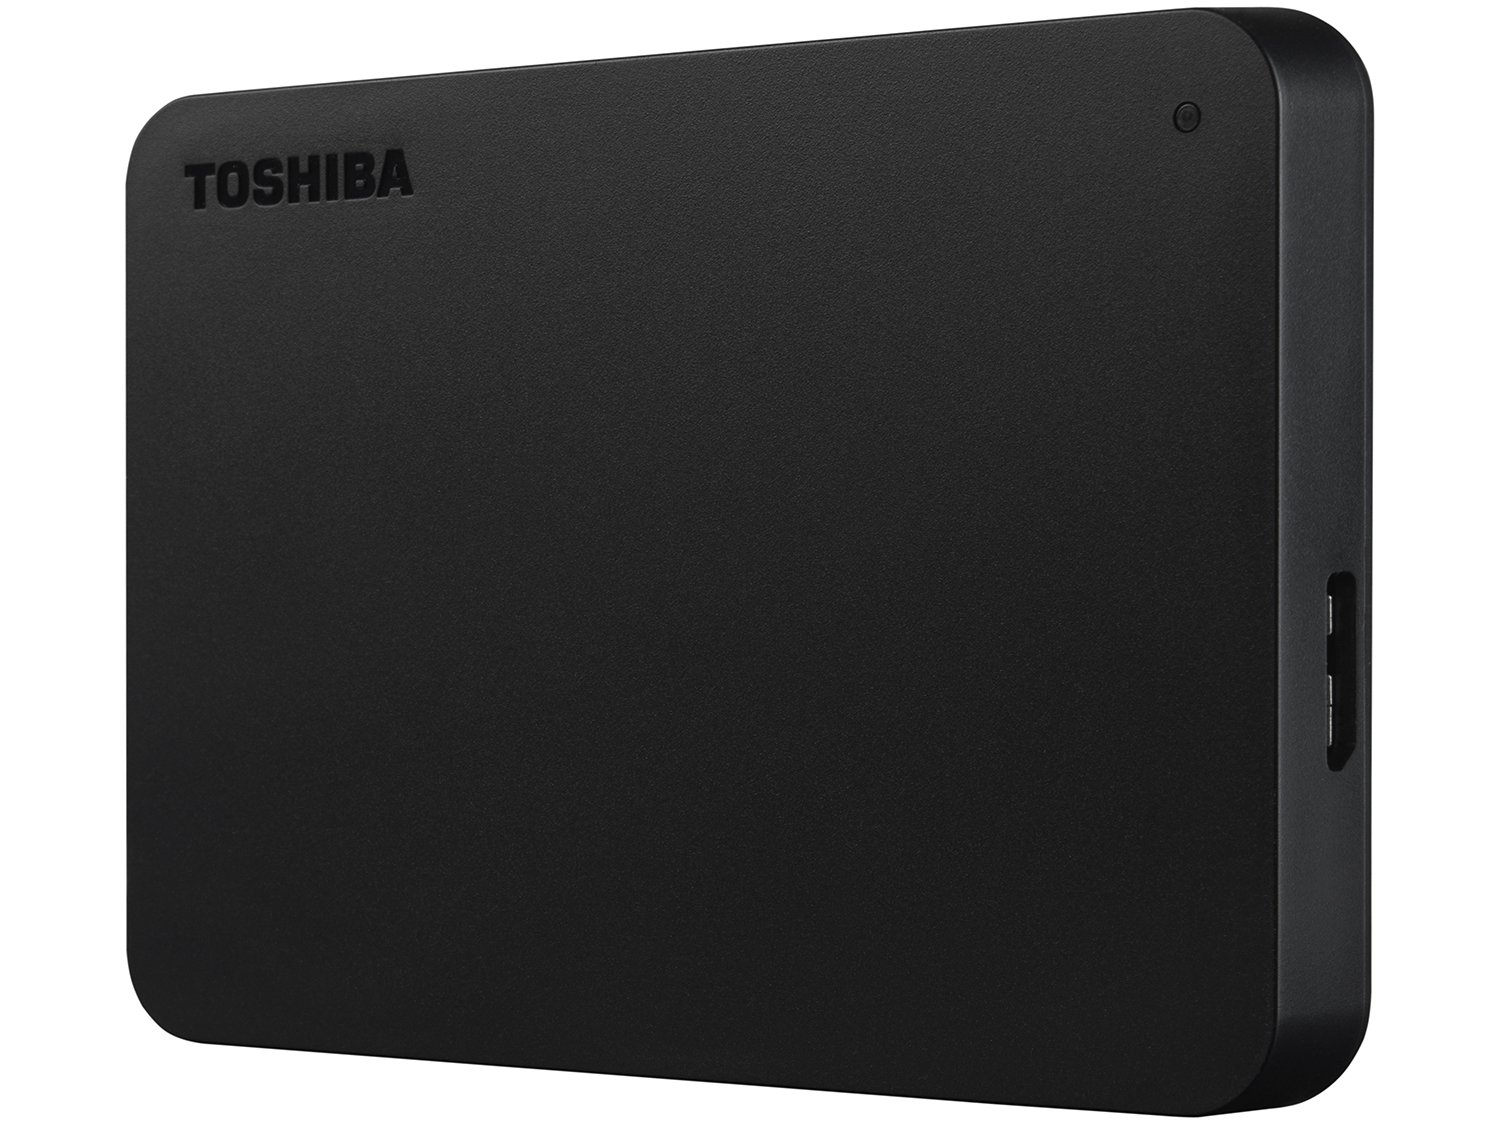 HD Externo 1TB Toshiba Canvio Basics - HDTB410XK3AA USB 3.0 - 1